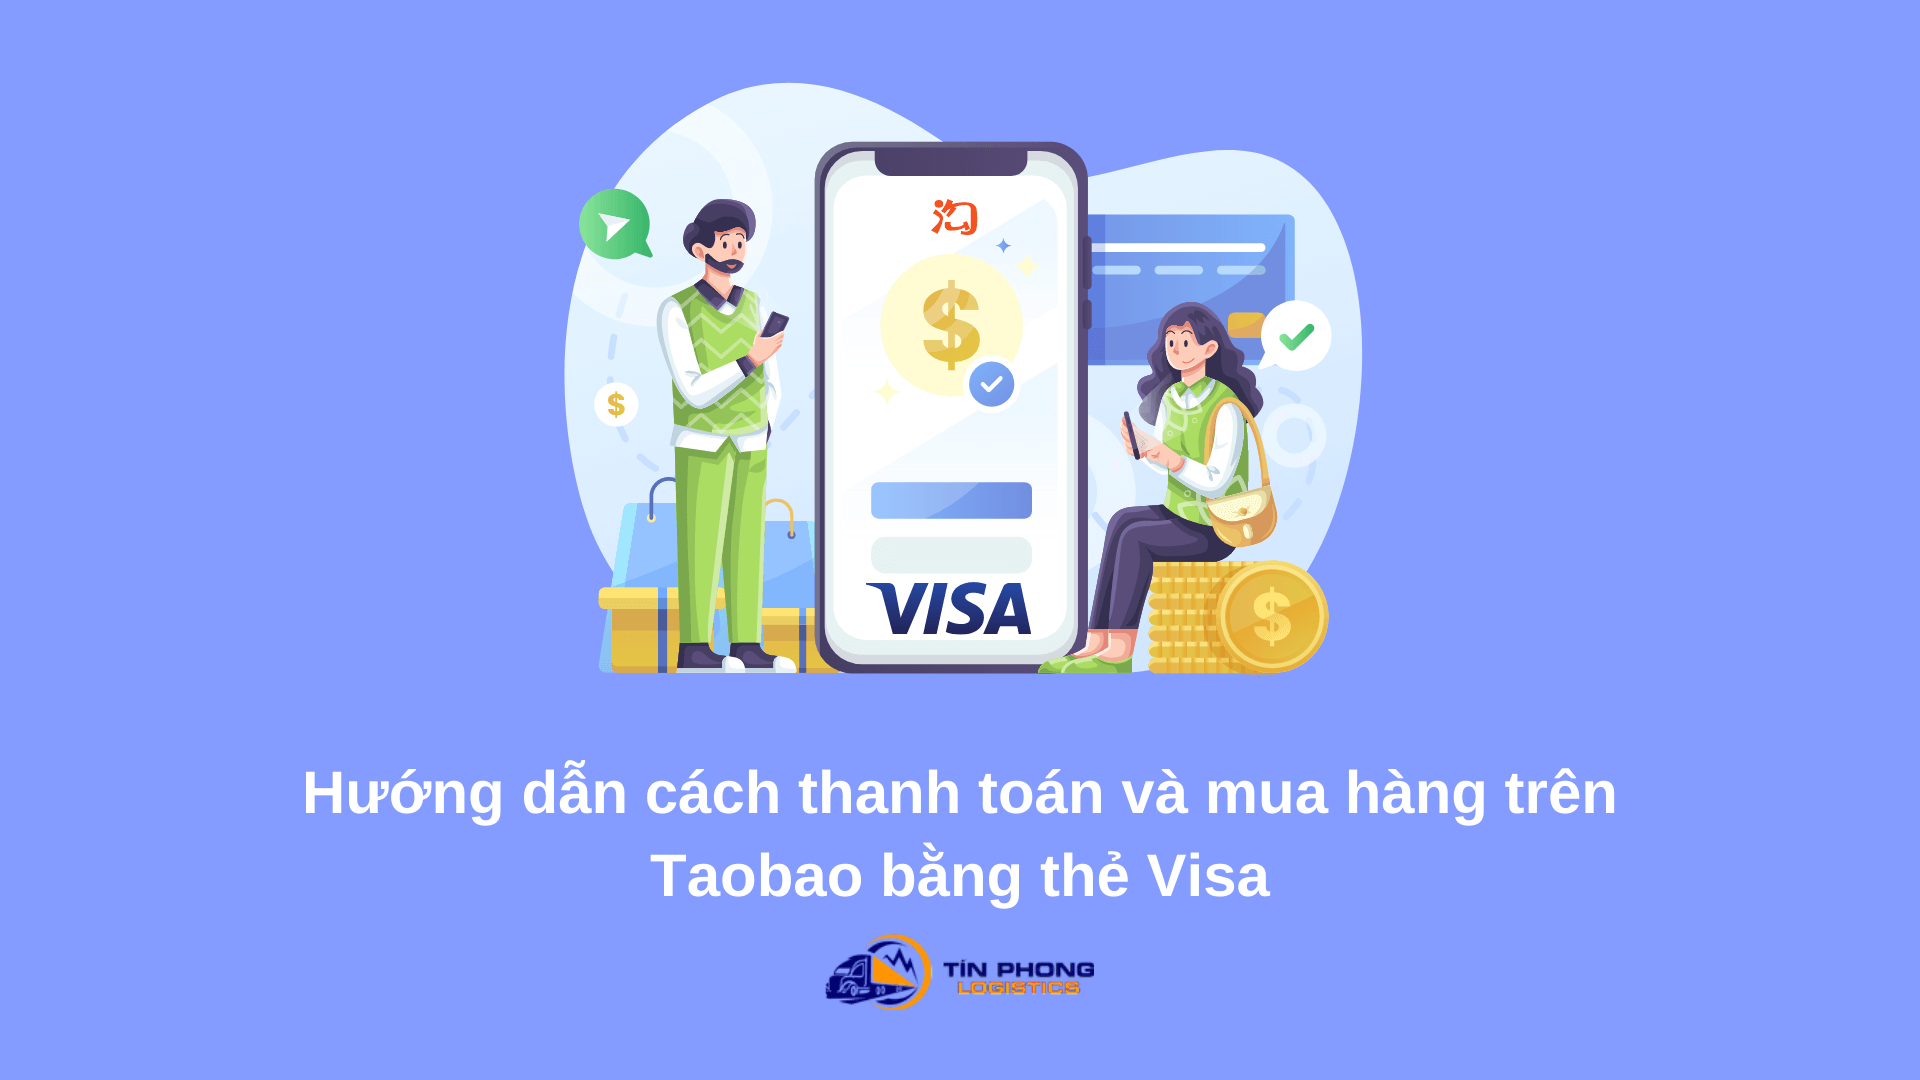 Hướng dẫn cách thanh toán mua hàng trên Taobao bằng thẻ Visa